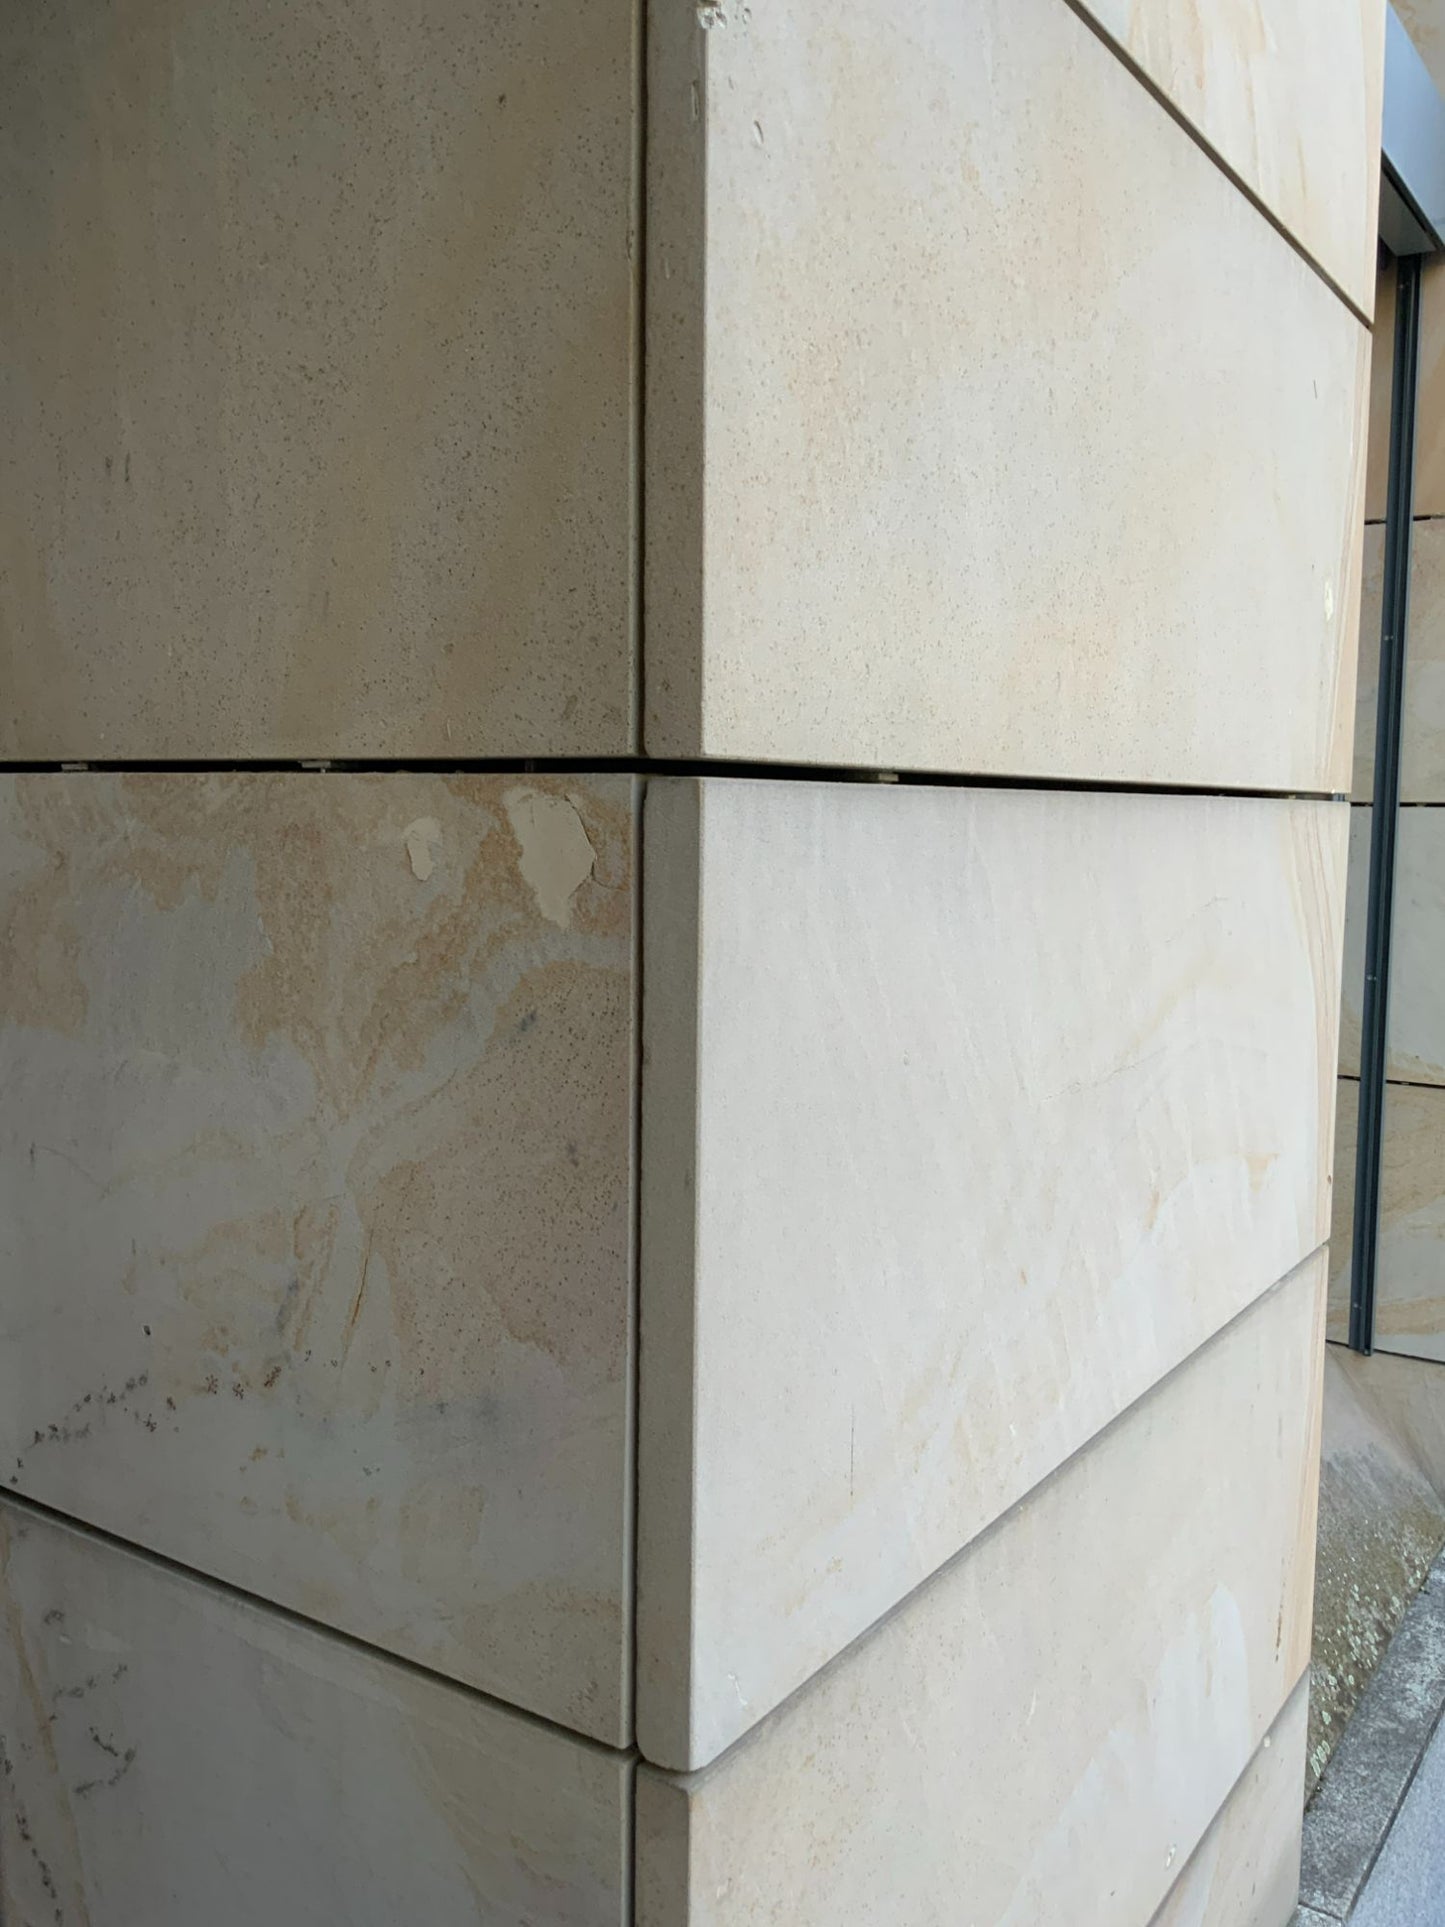 Vorgehängte Außenwandbekleidung - Natursteinplatten , einseitige Abkantung 1520x580x40